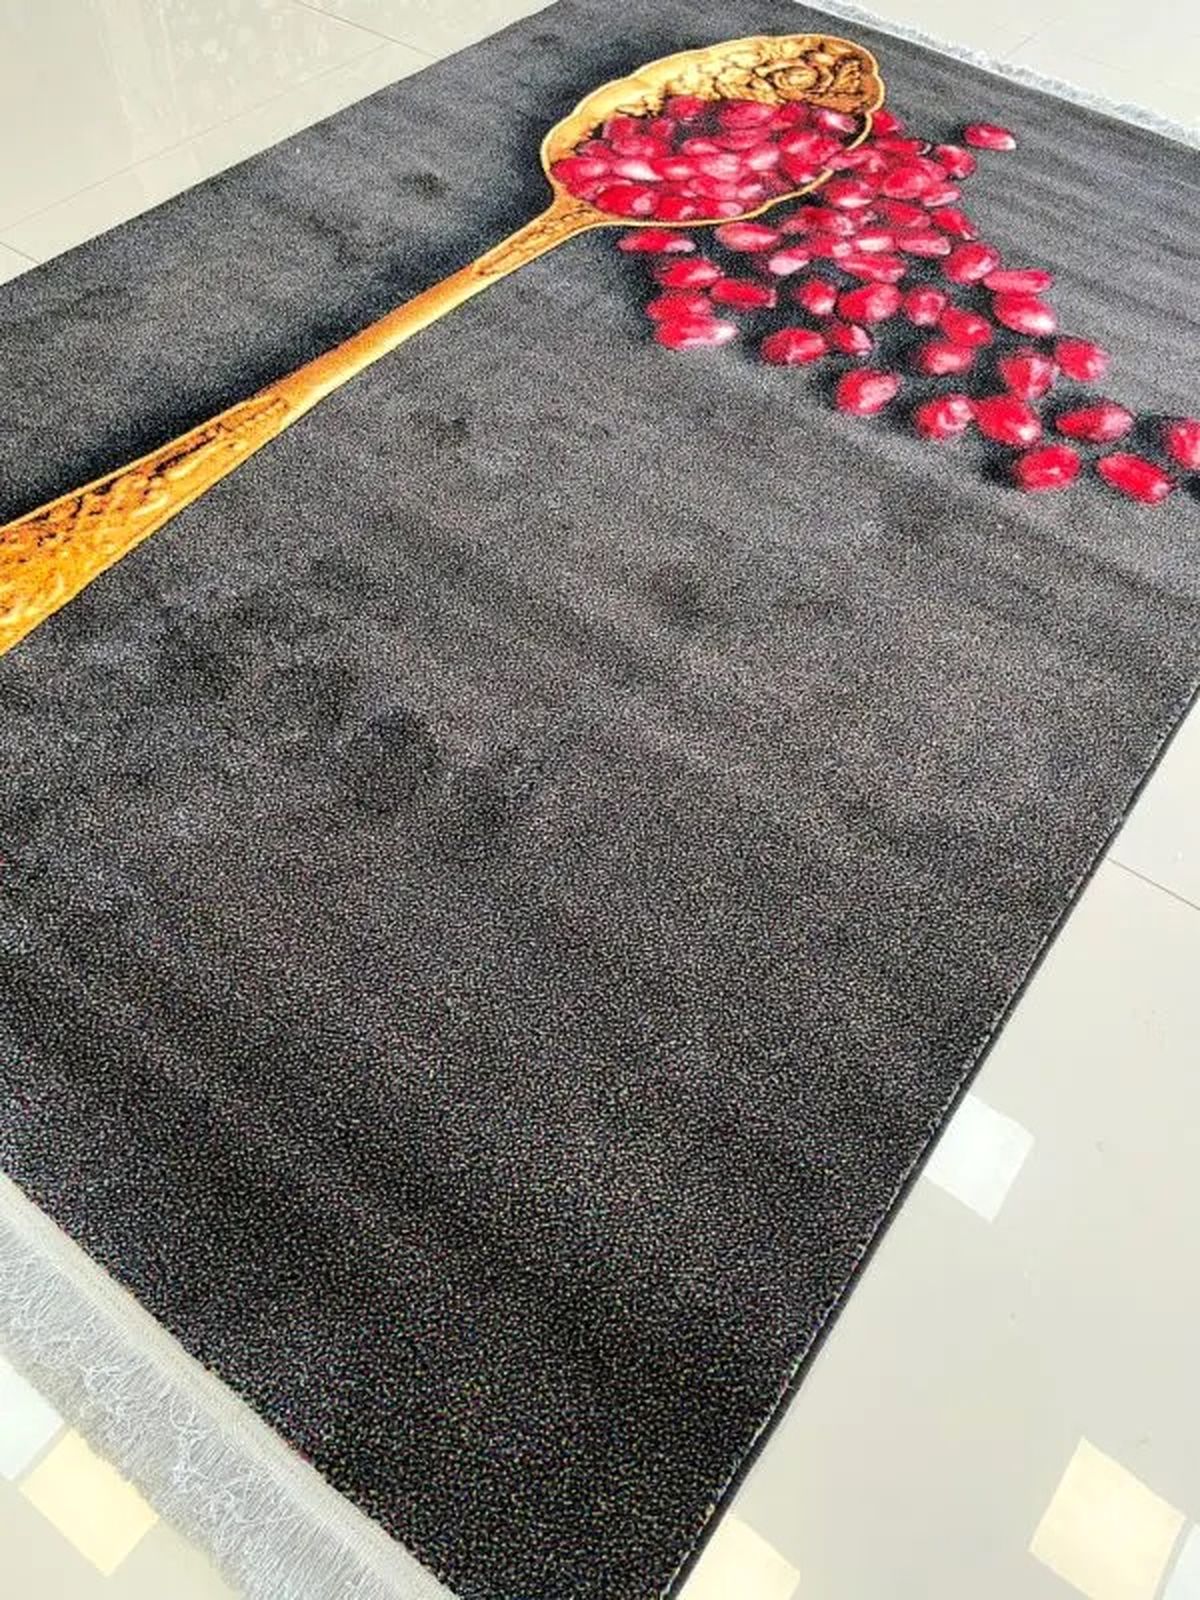 فرش برای آشپزخانه کوچک